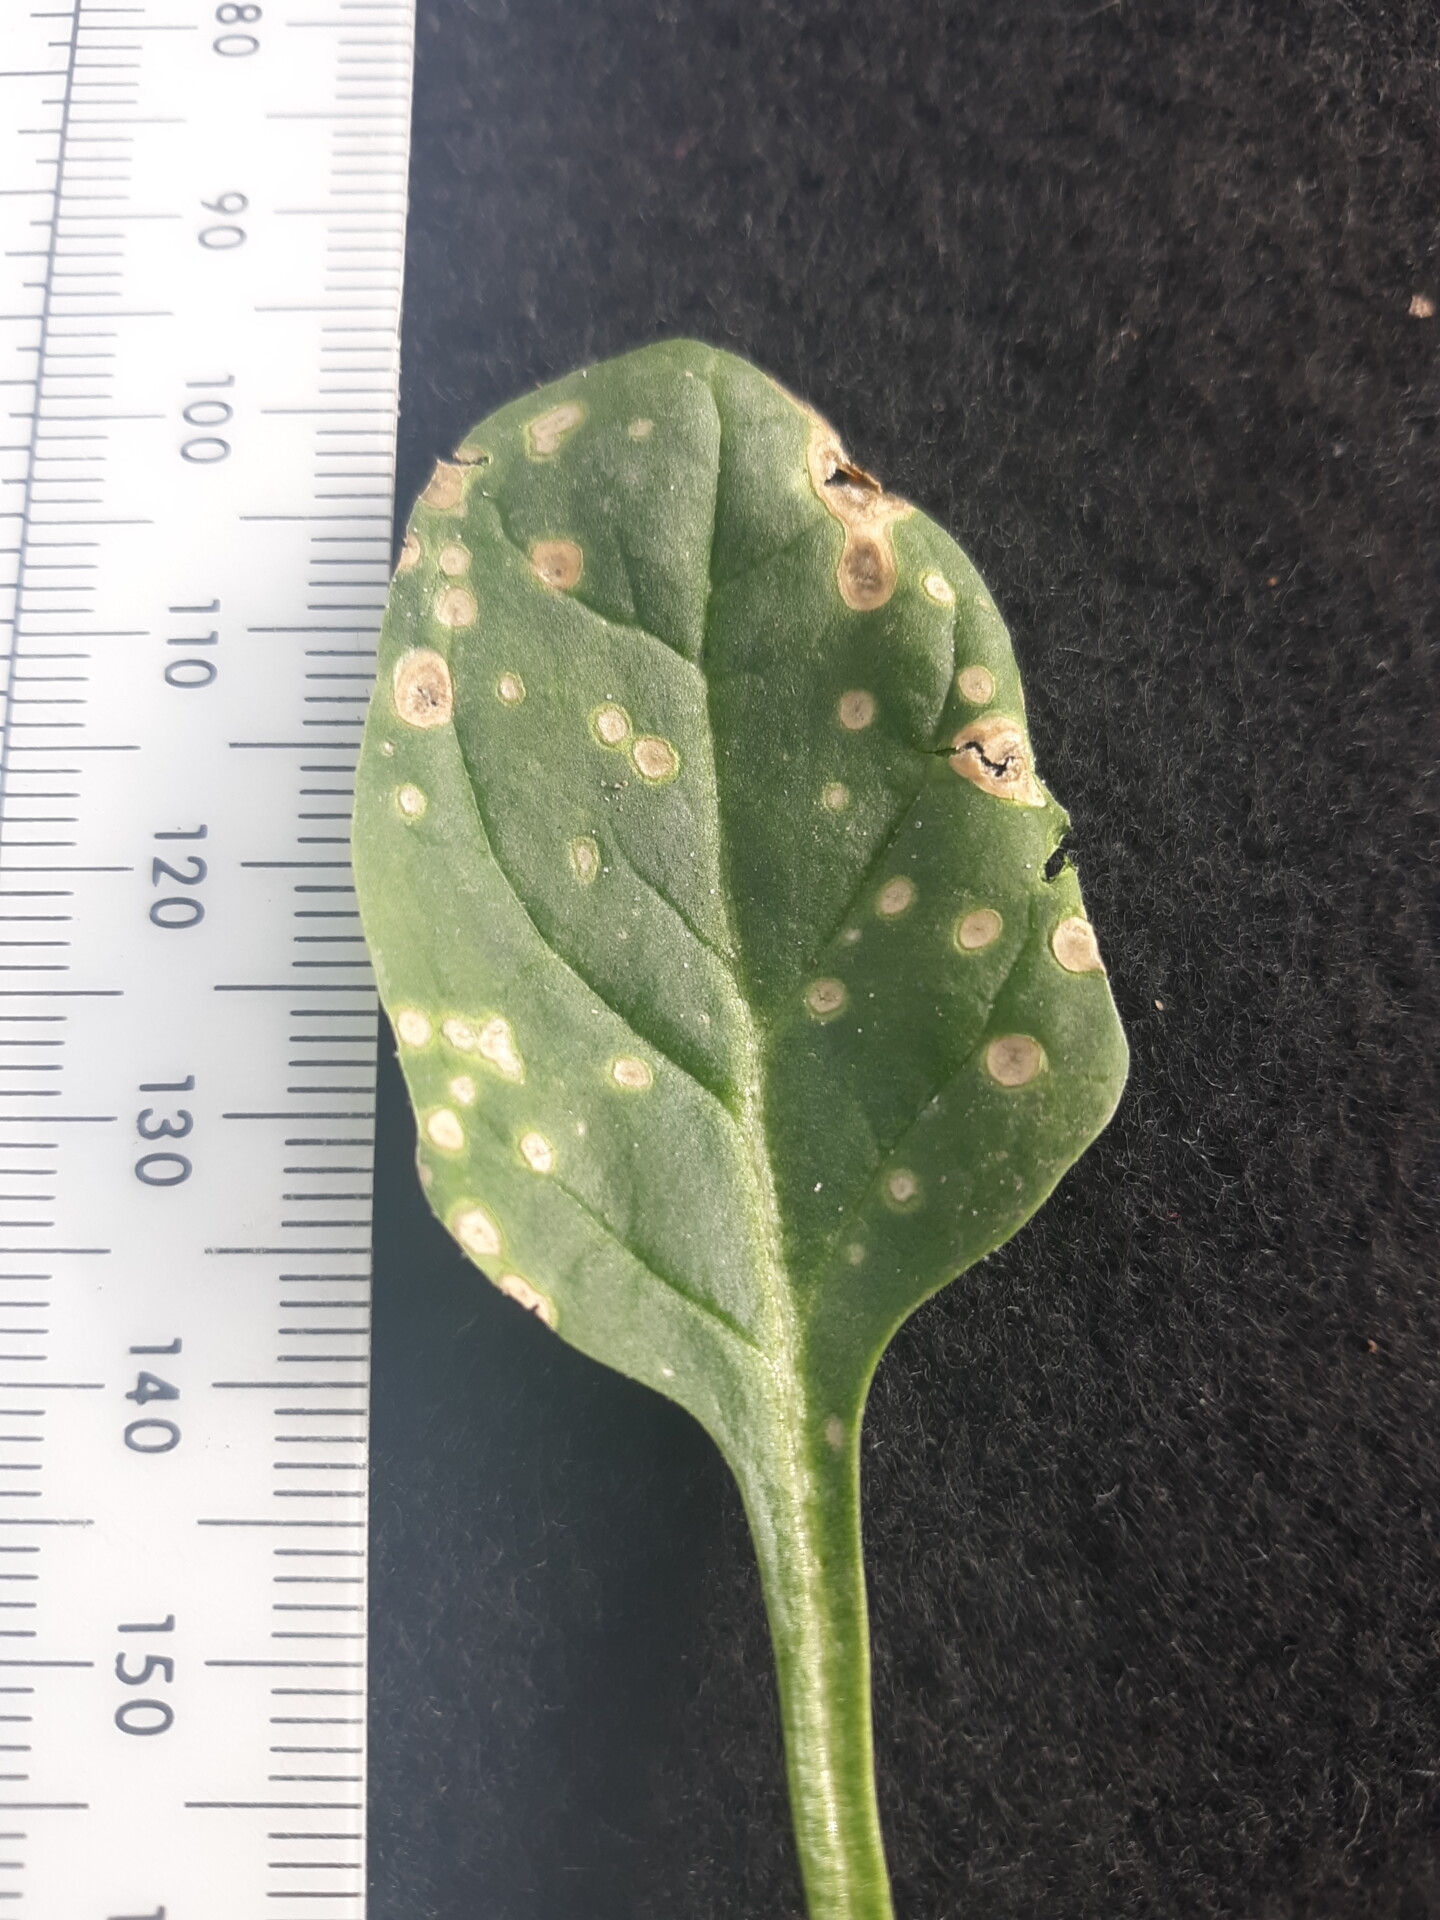 Figure 3. Cladosporium leaf spot of spinach.